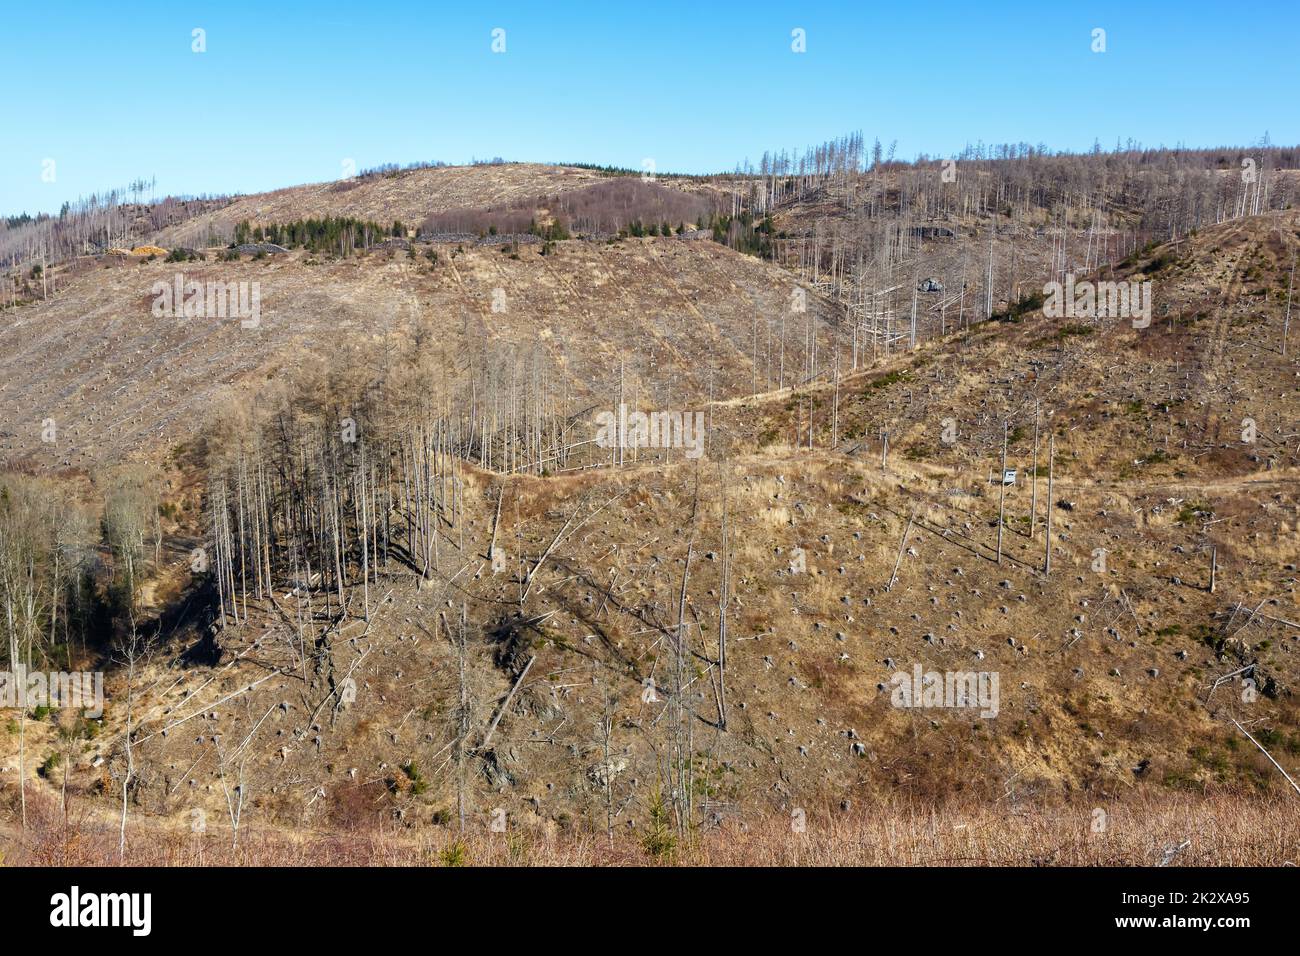 Destruction de l'environnement changement climatique crise environnement paysage nature forêt dépérissement à Brocken à Harz, Allemagne Banque D'Images